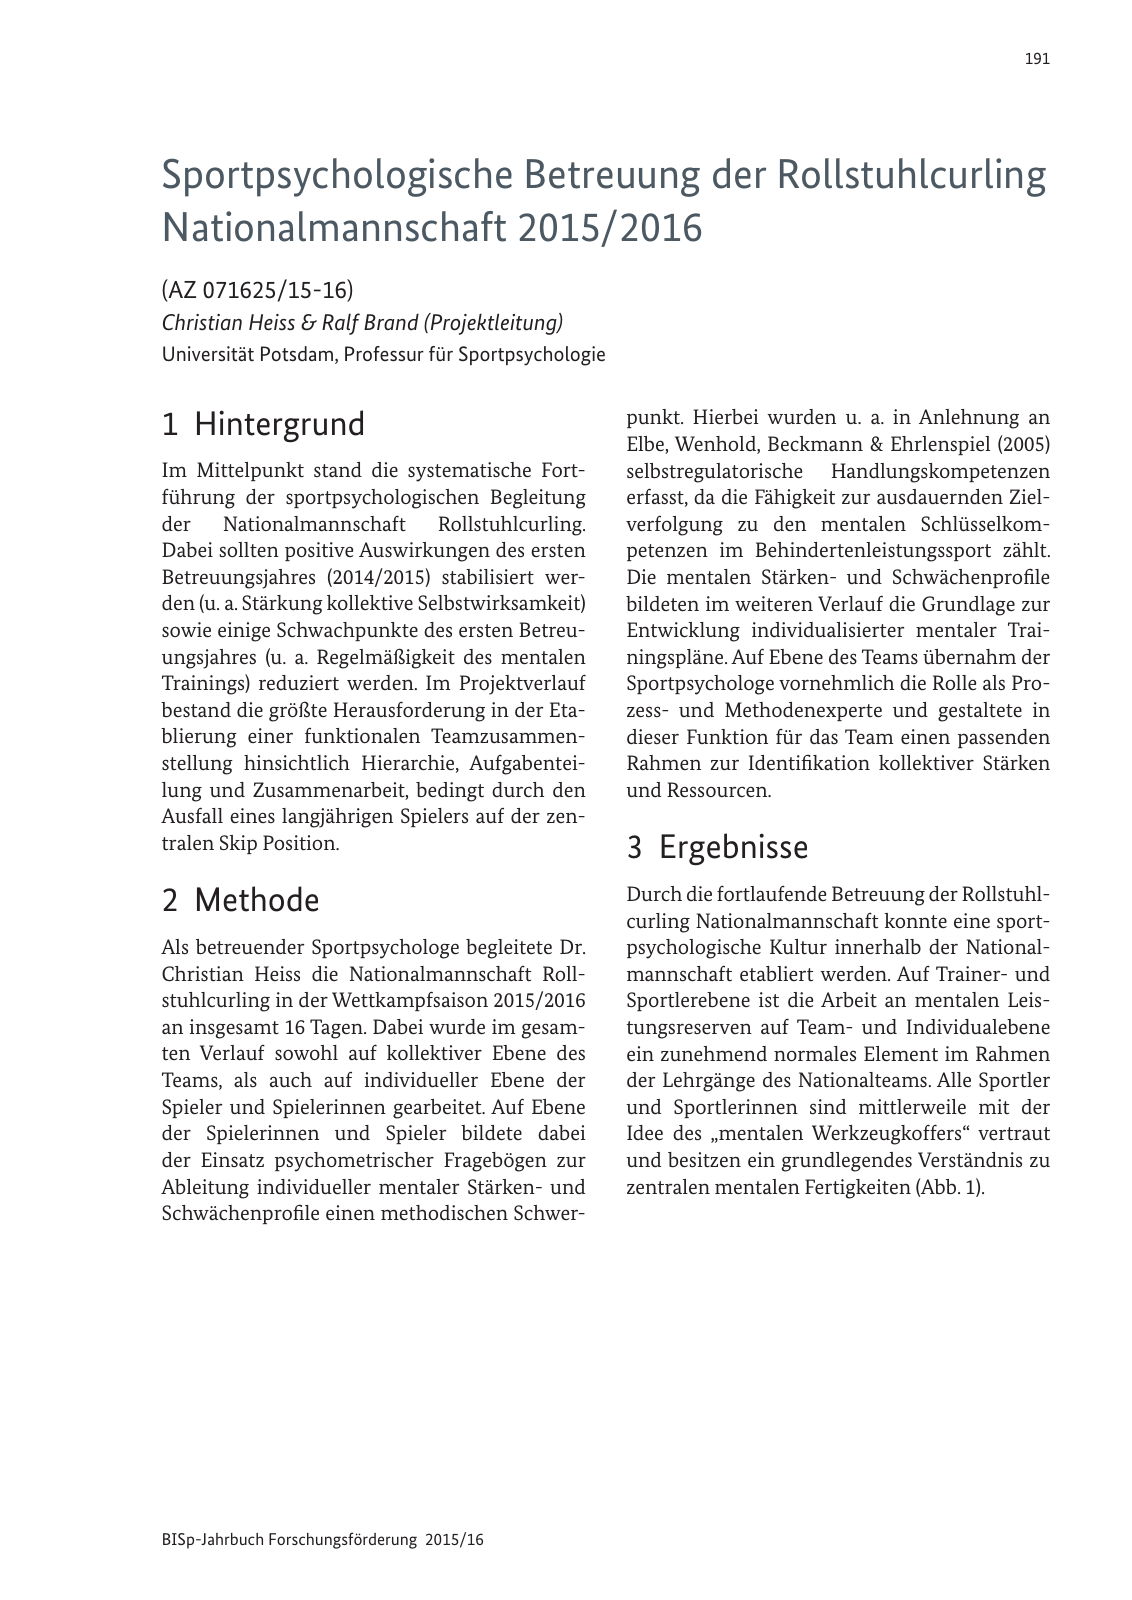 Vorschau BISp-Jahrbuch Forschungsförderung 2015/16 Seite 193